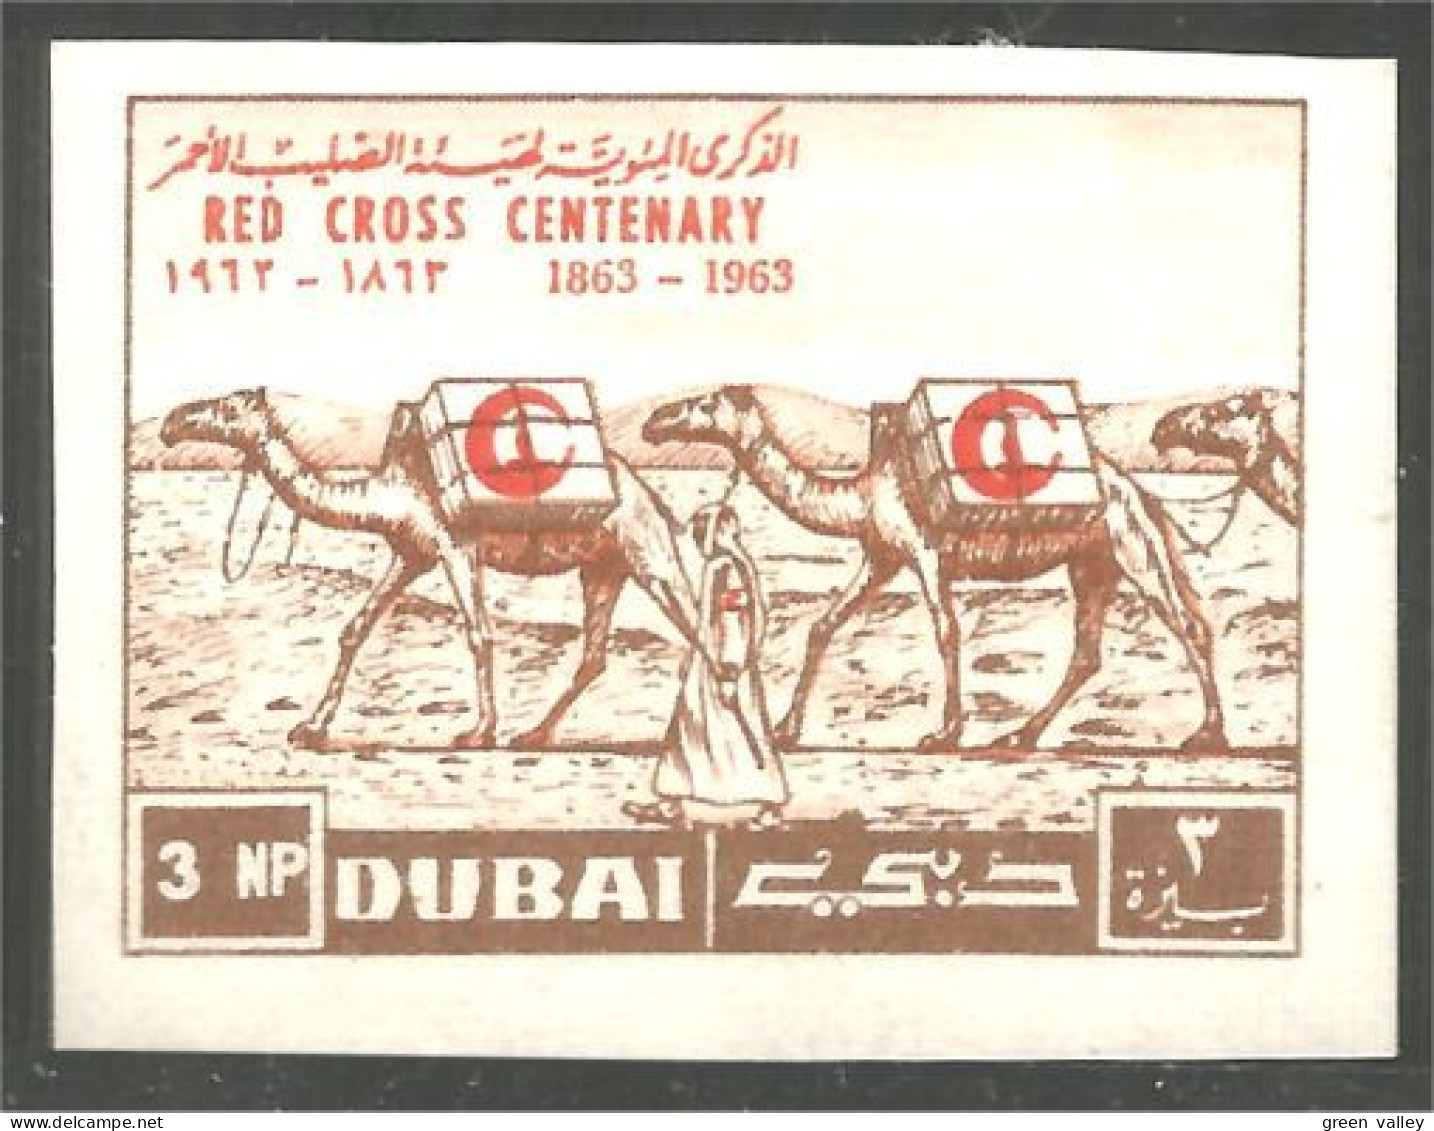 AF-34 Dubai Chameau Camel Dromadaire Non Dentelé Imperforate Croix Rouge Red Cross Rotes Kreuz - Granjas